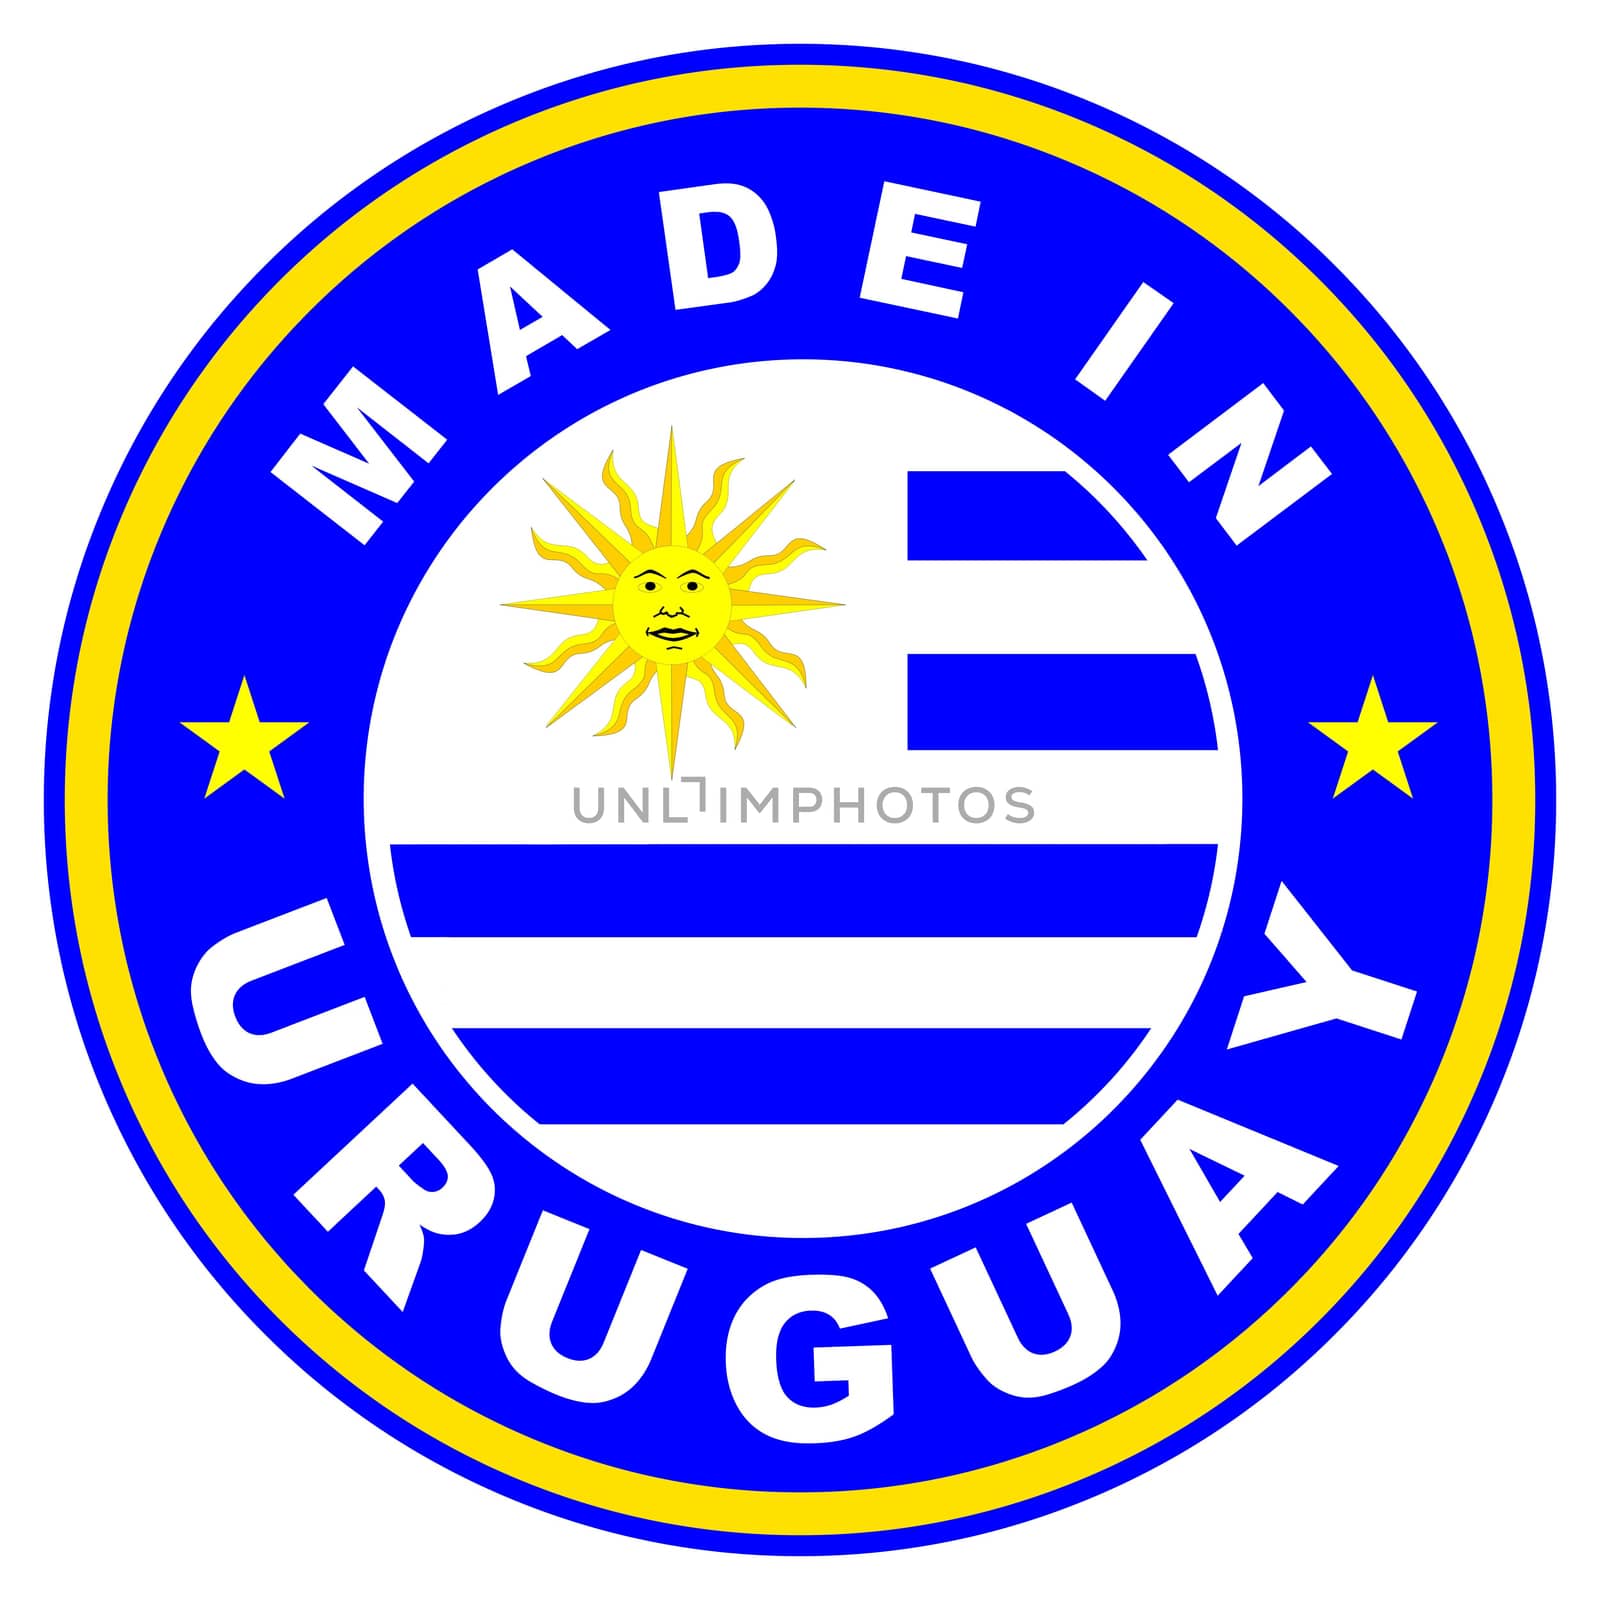 made in uruguay by tony4urban